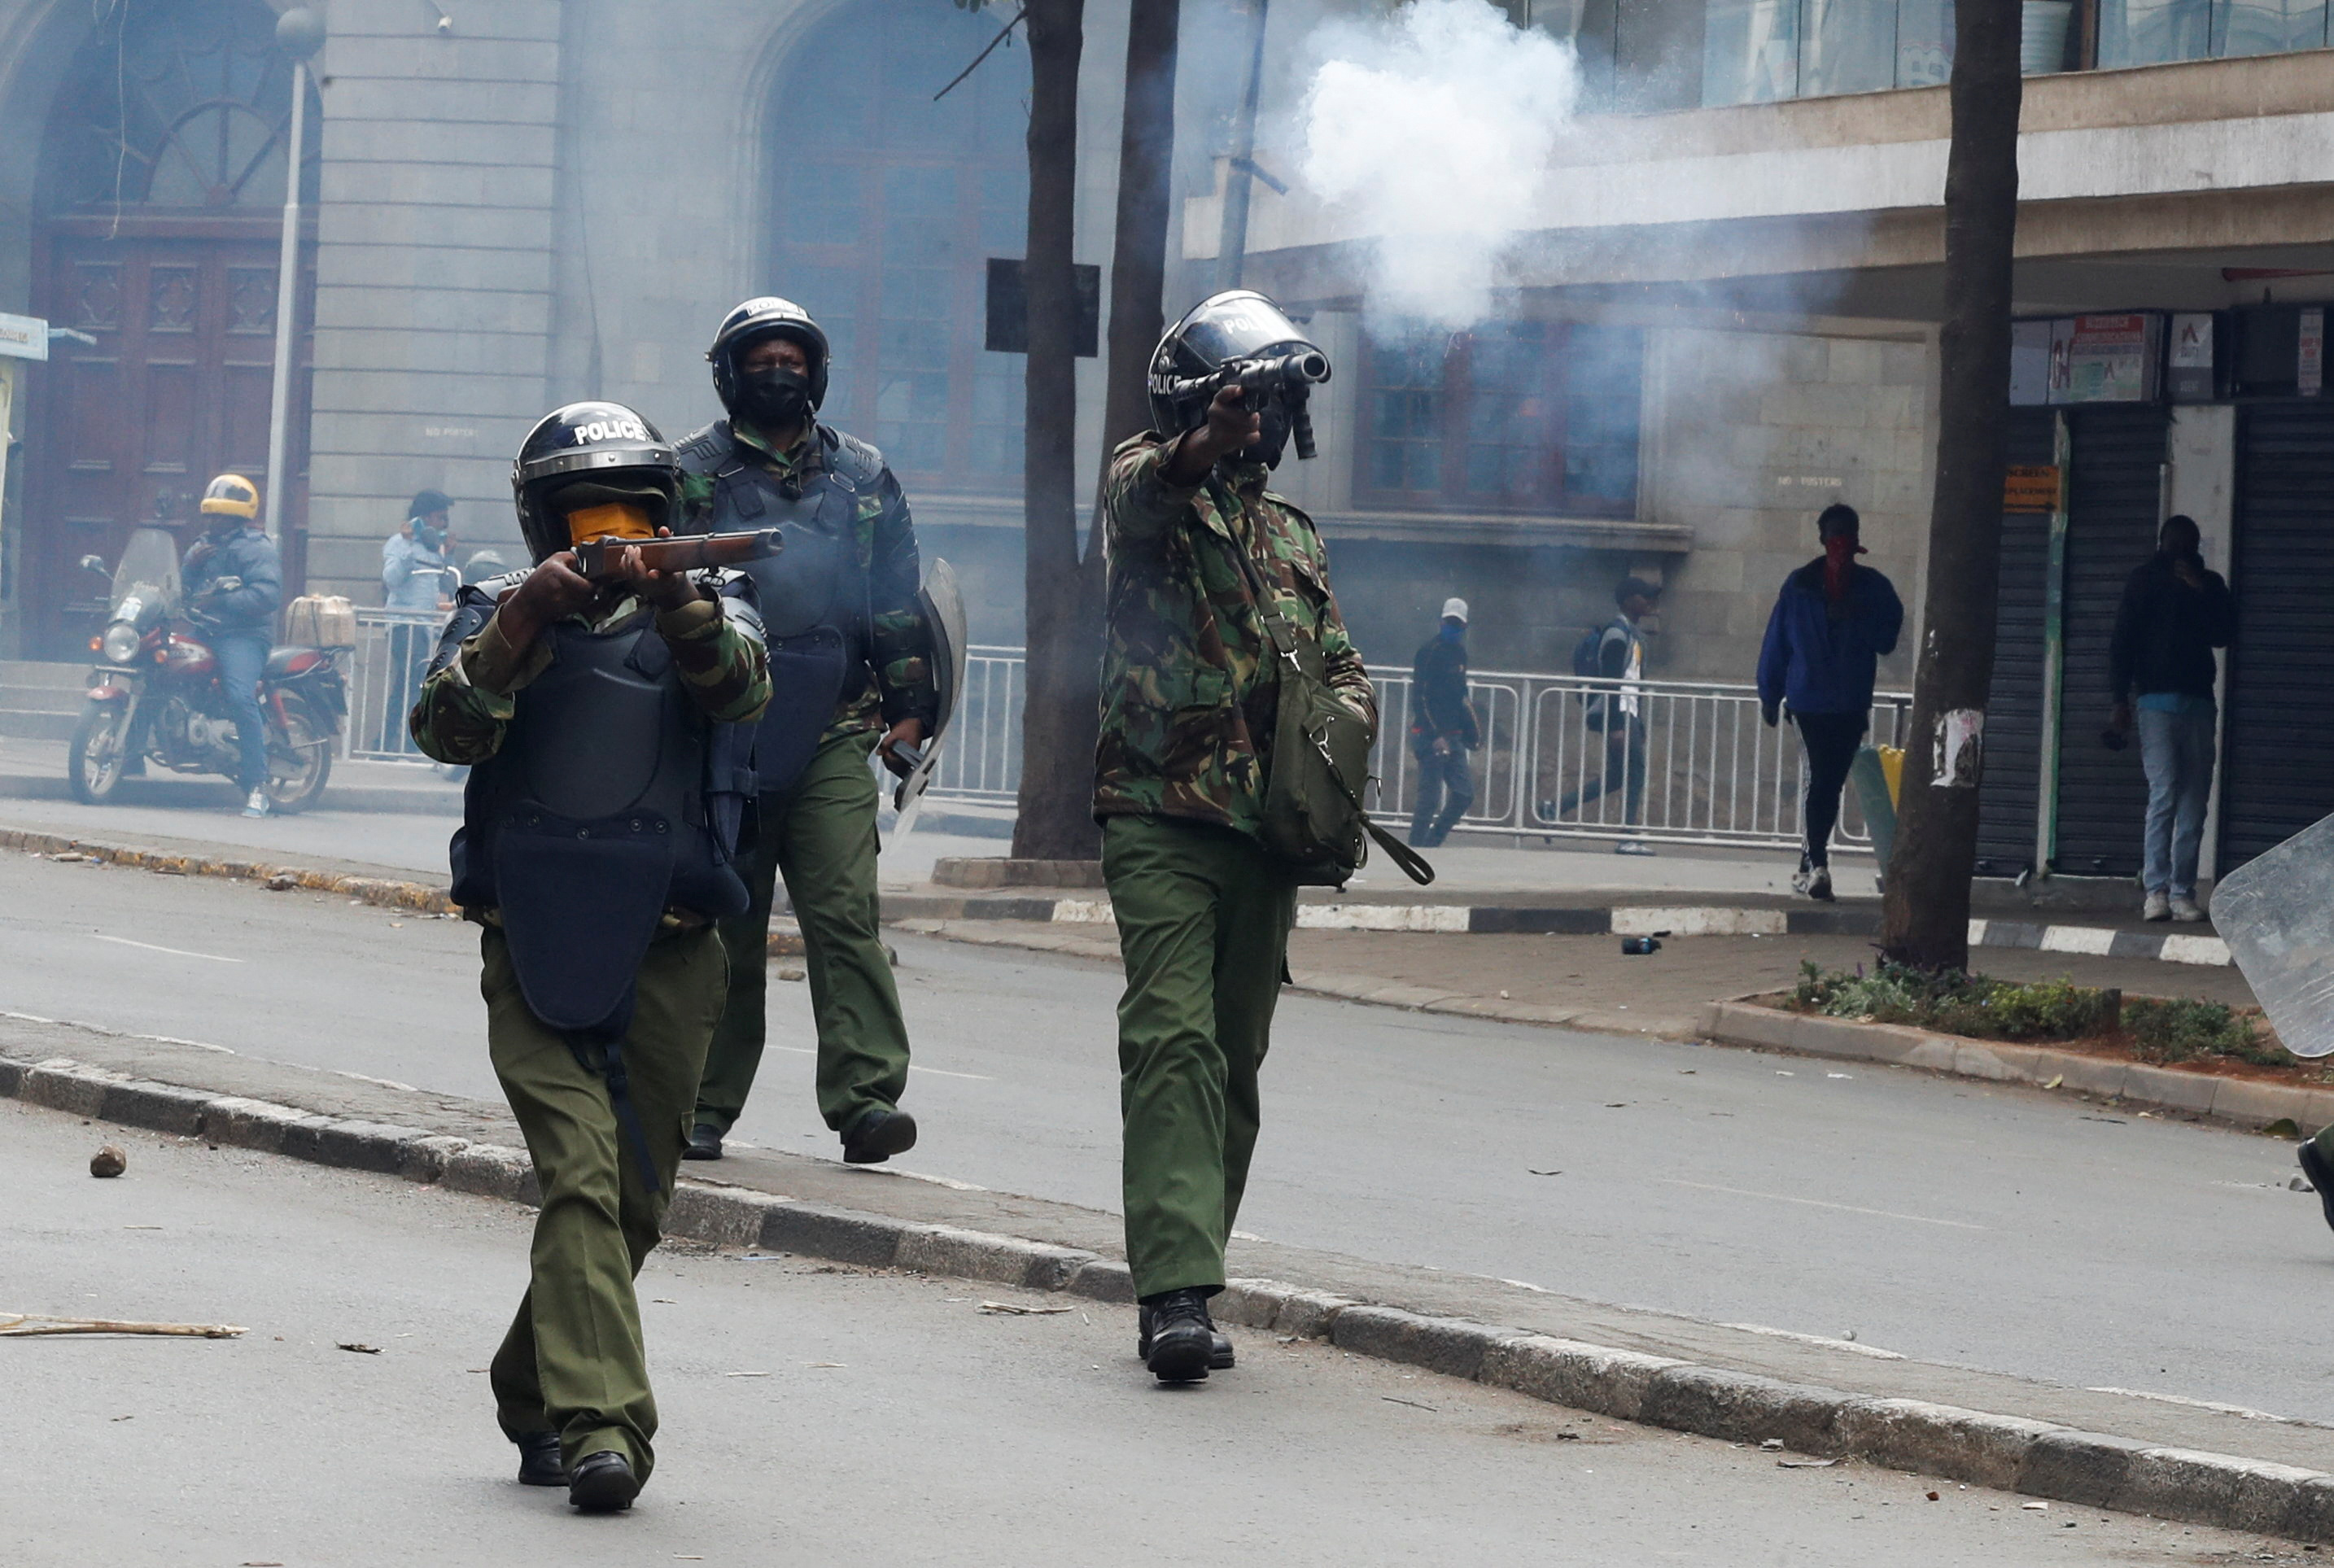 ケニア、増税撤回後もデモ終息せず ナイロビ近郊で2人死亡 | ロイター